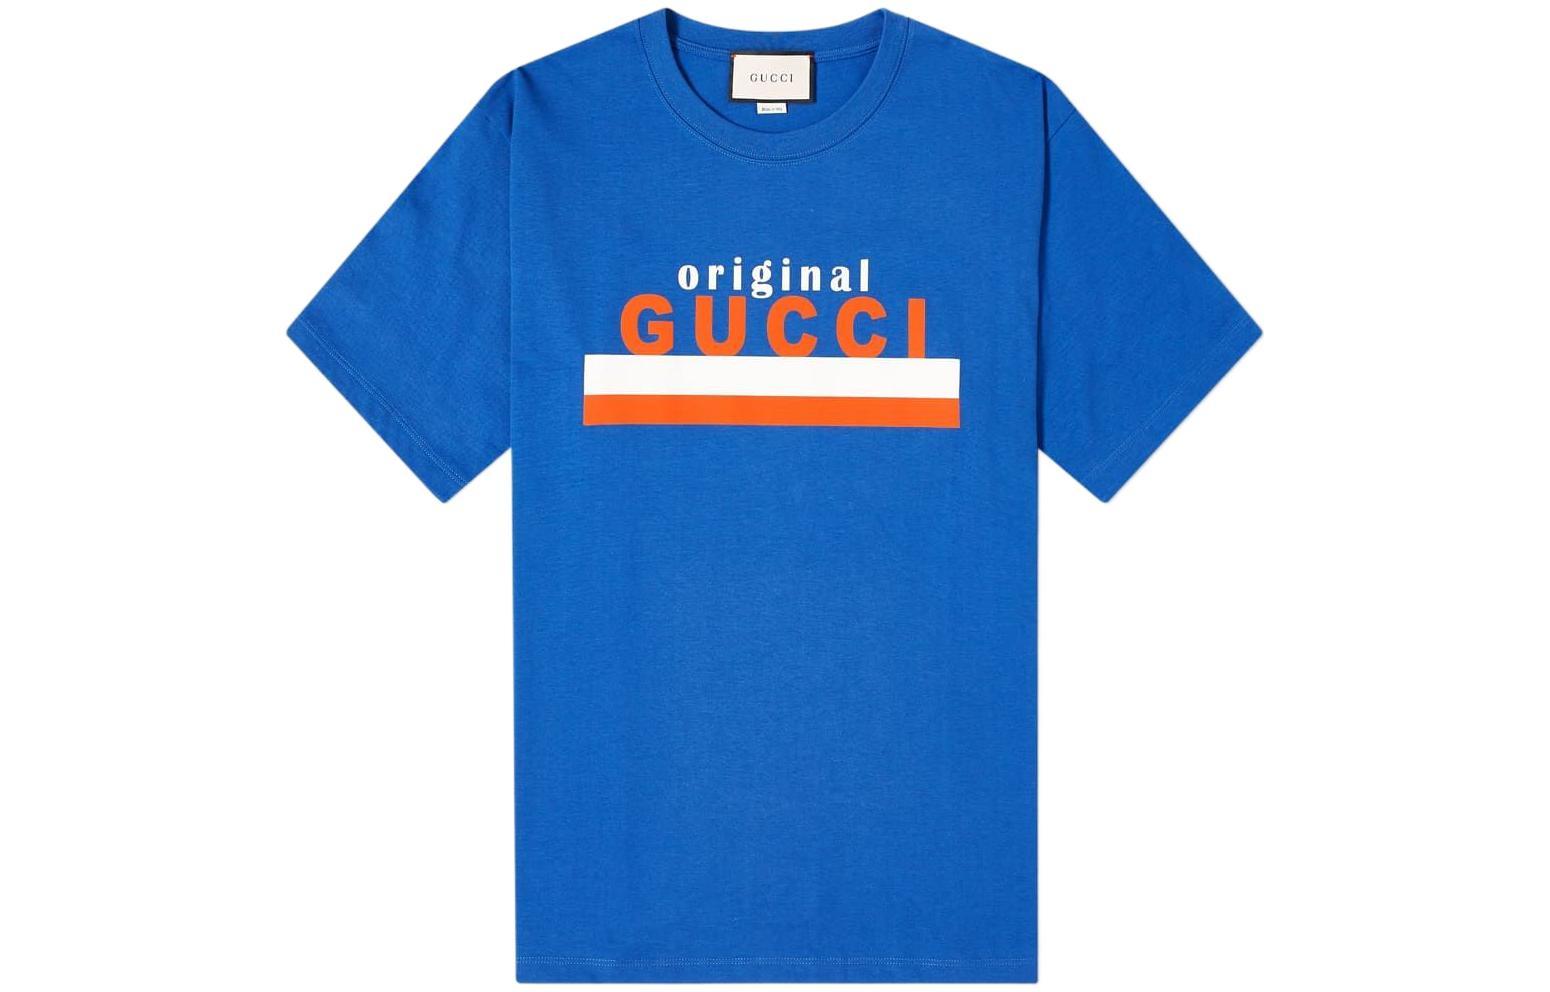 GUCCI Original GucciT